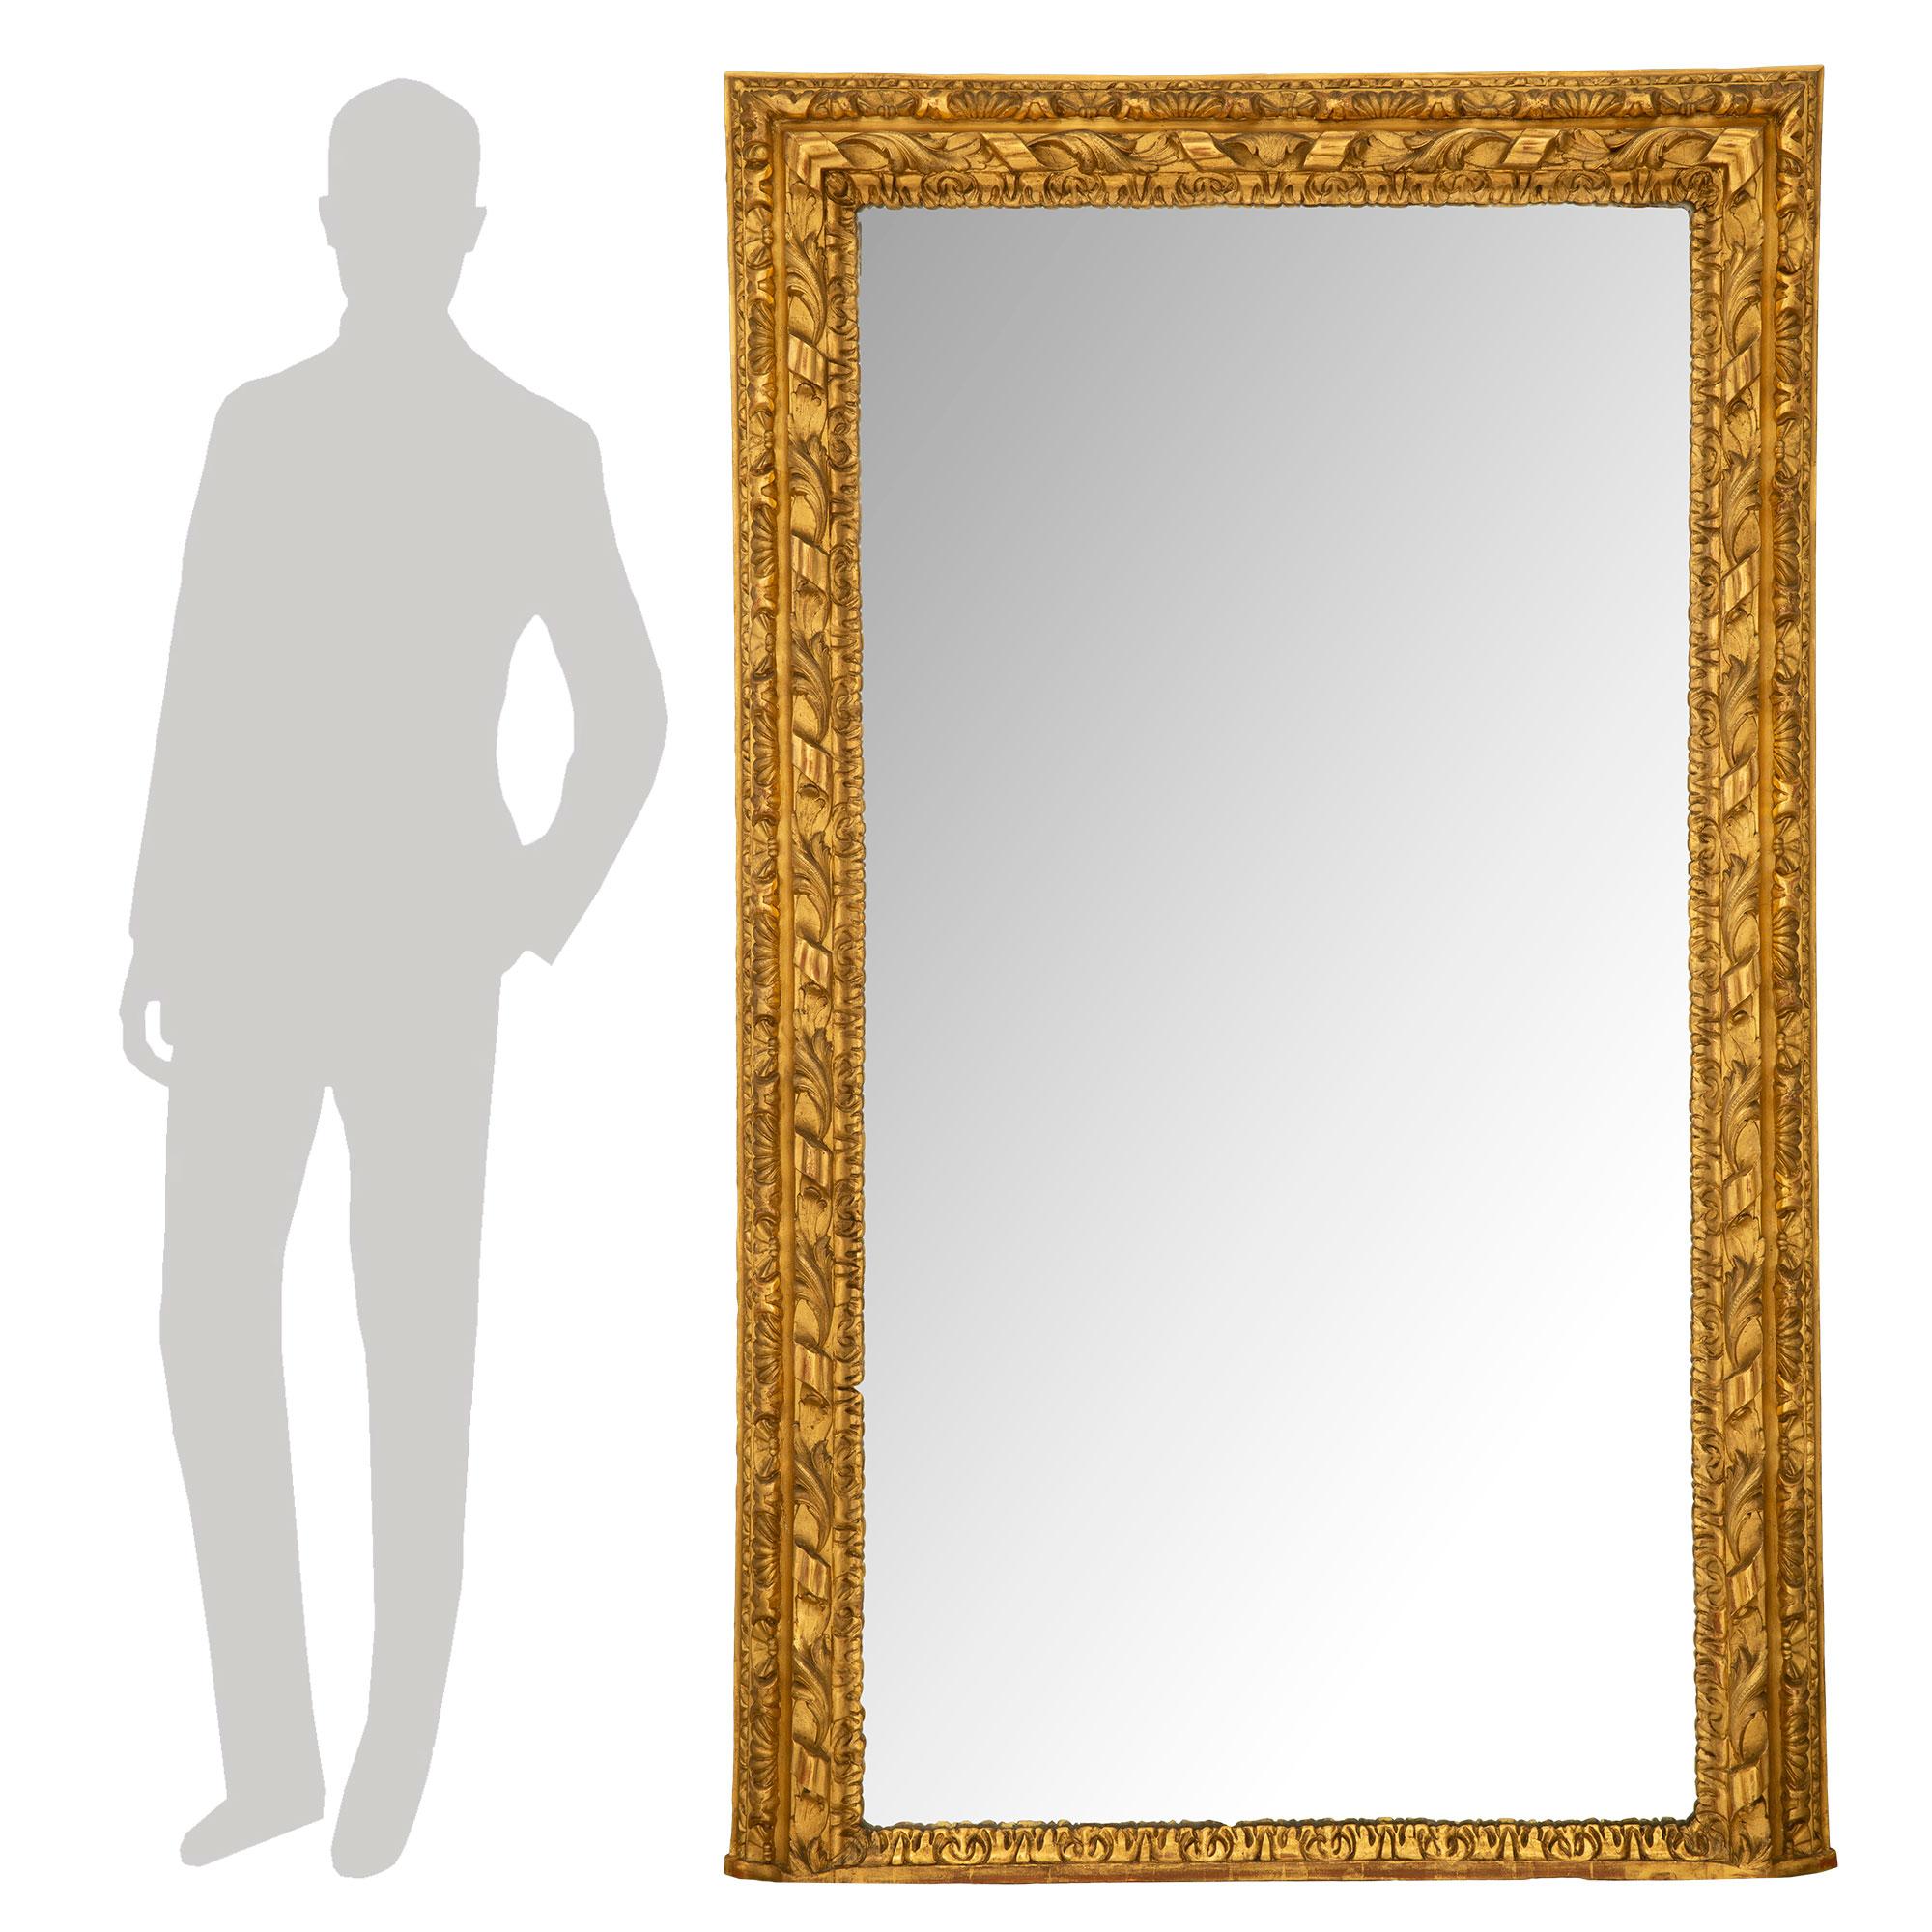 Un beau miroir en bois doré italien du 19ème siècle de grande qualité. La plaque de miroir d'origine est placée dans un cadre marbré et feuillagé remarquable et merveilleusement exécuté, avec un très élégant motif de ruban noué. Toutes les pièces